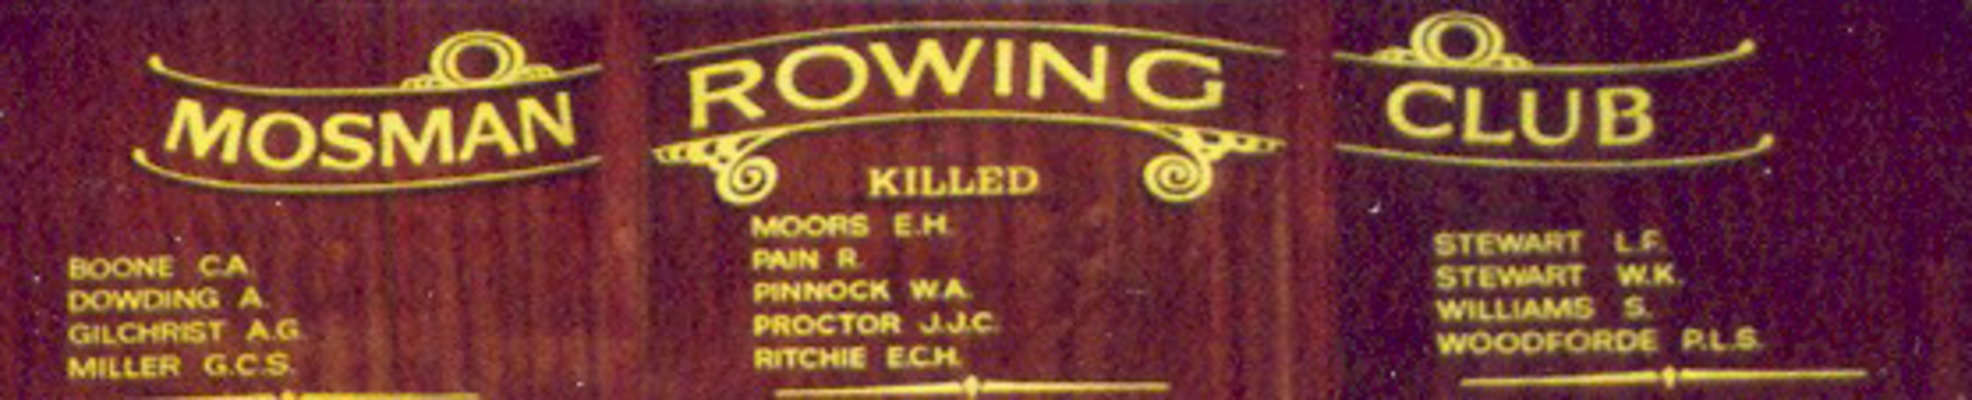 Mosman Rowing Club roll of honour 1914-1918